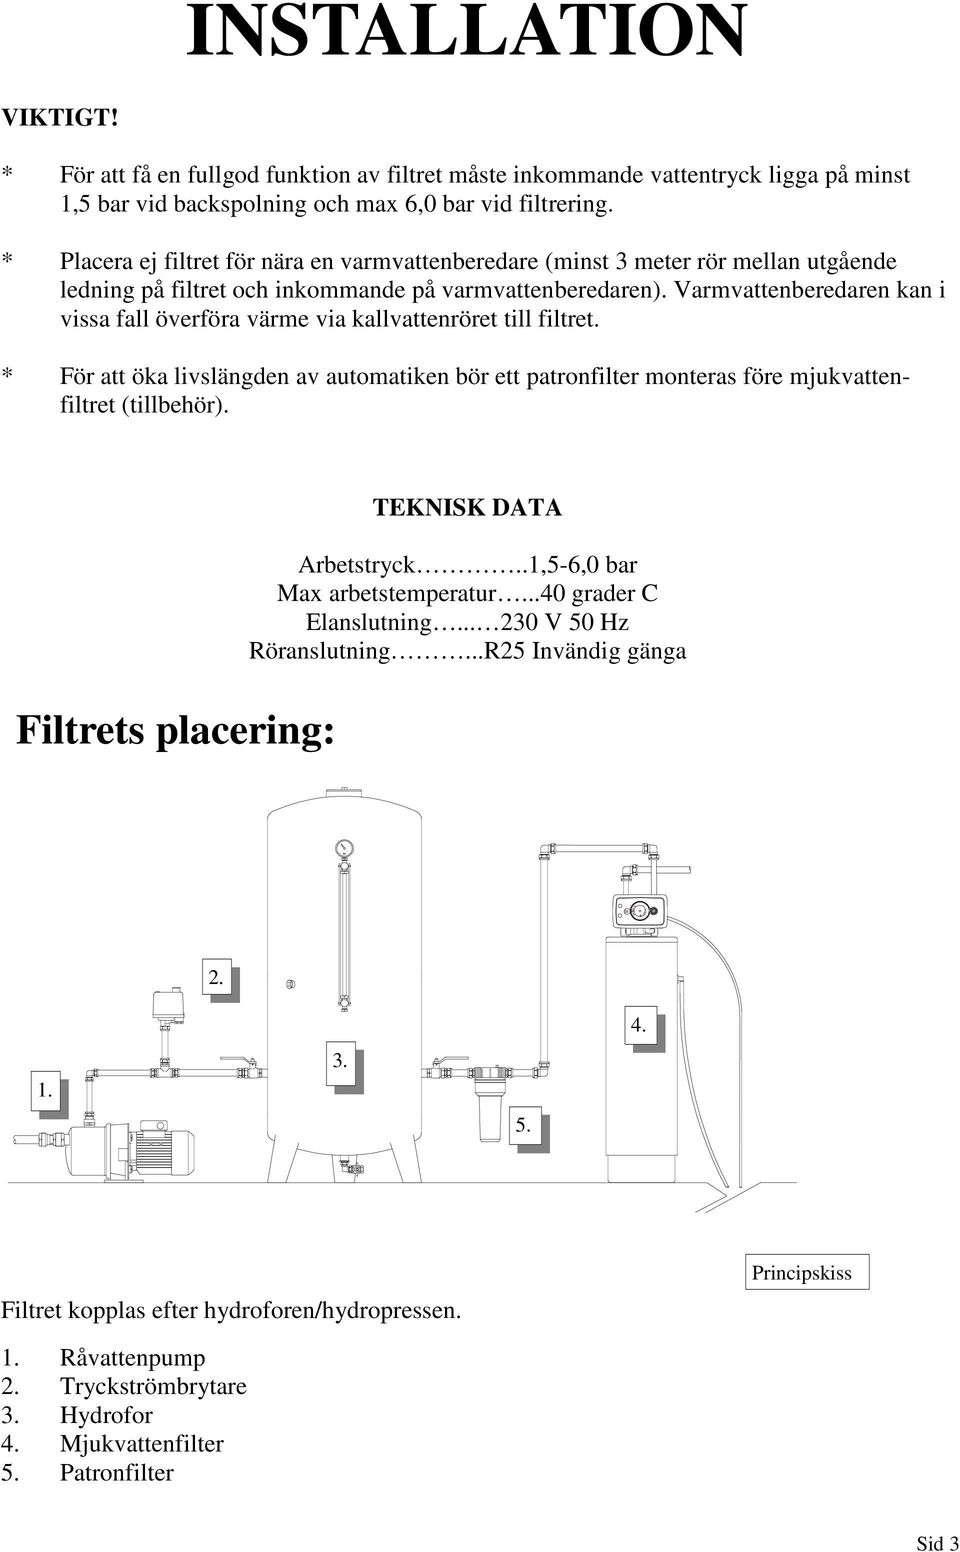 Varmvattenberedaren kan i vissa fall överföra värme via kallvattenröret till filtret. * För att öka livslängden av automatiken bör ett patronfilter monteras före mjukvattenfiltret (tillbehör).